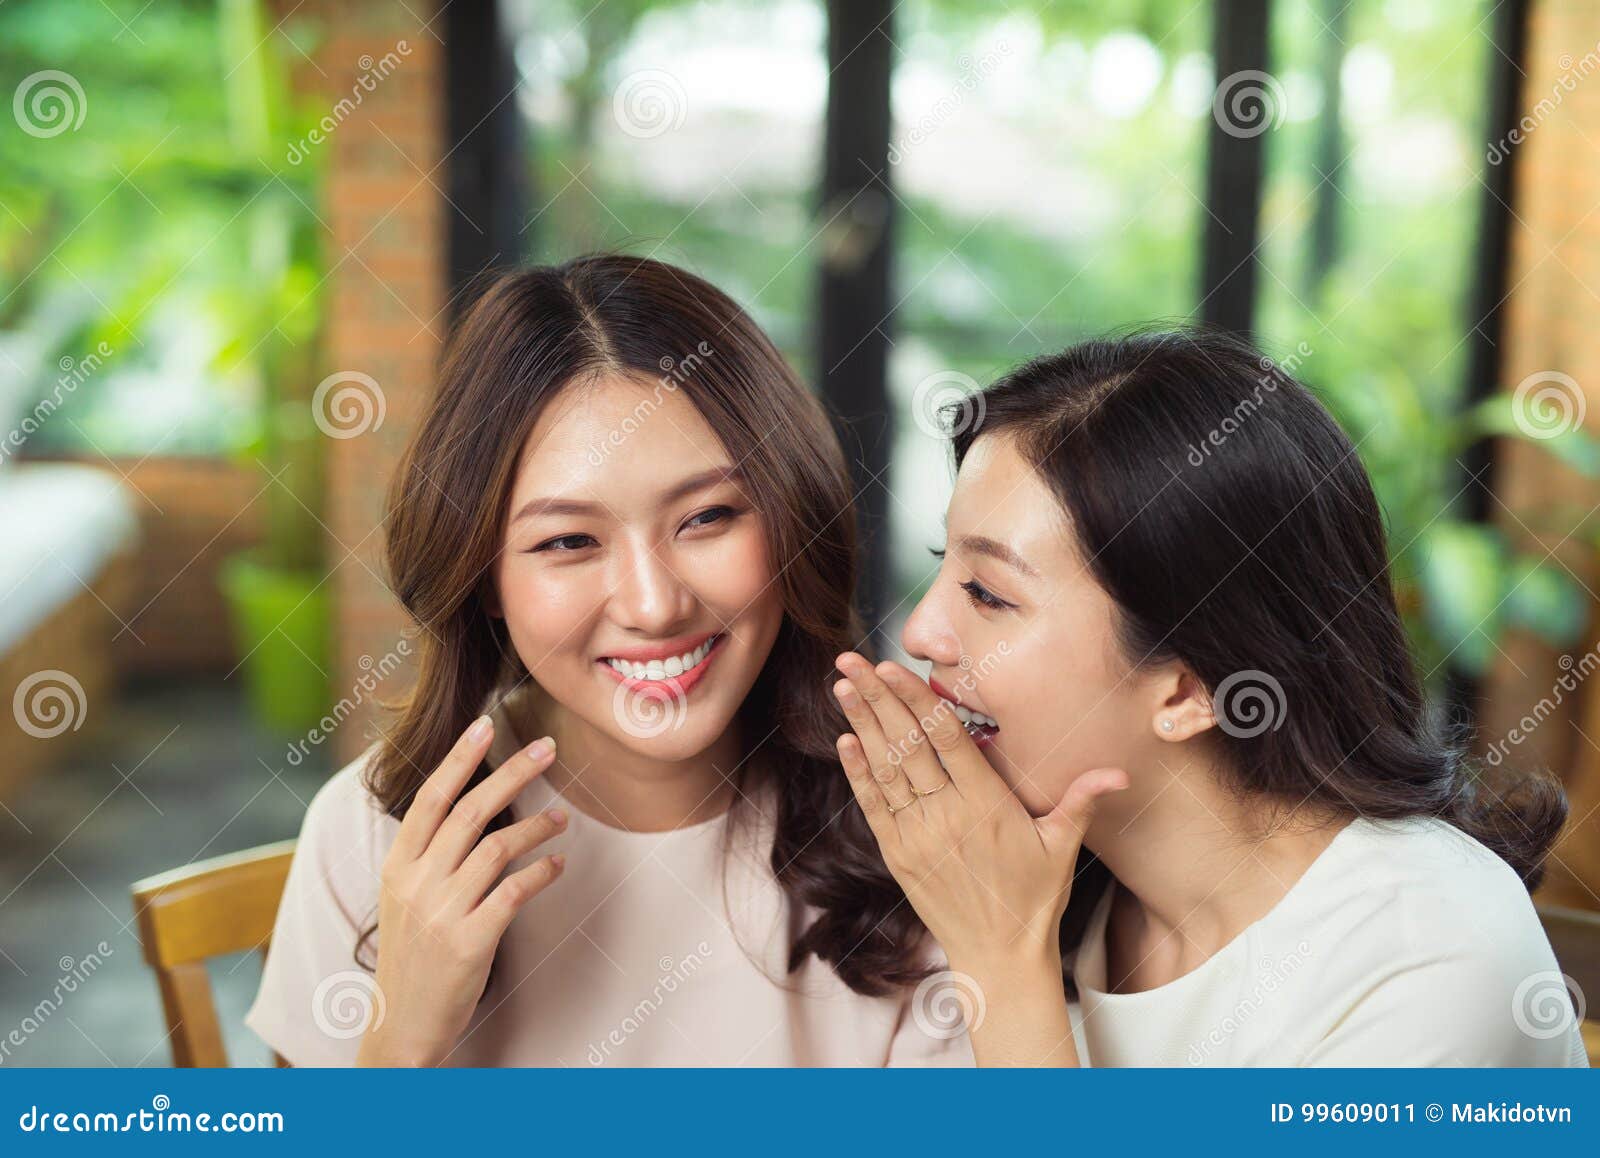 Asian women on friendster